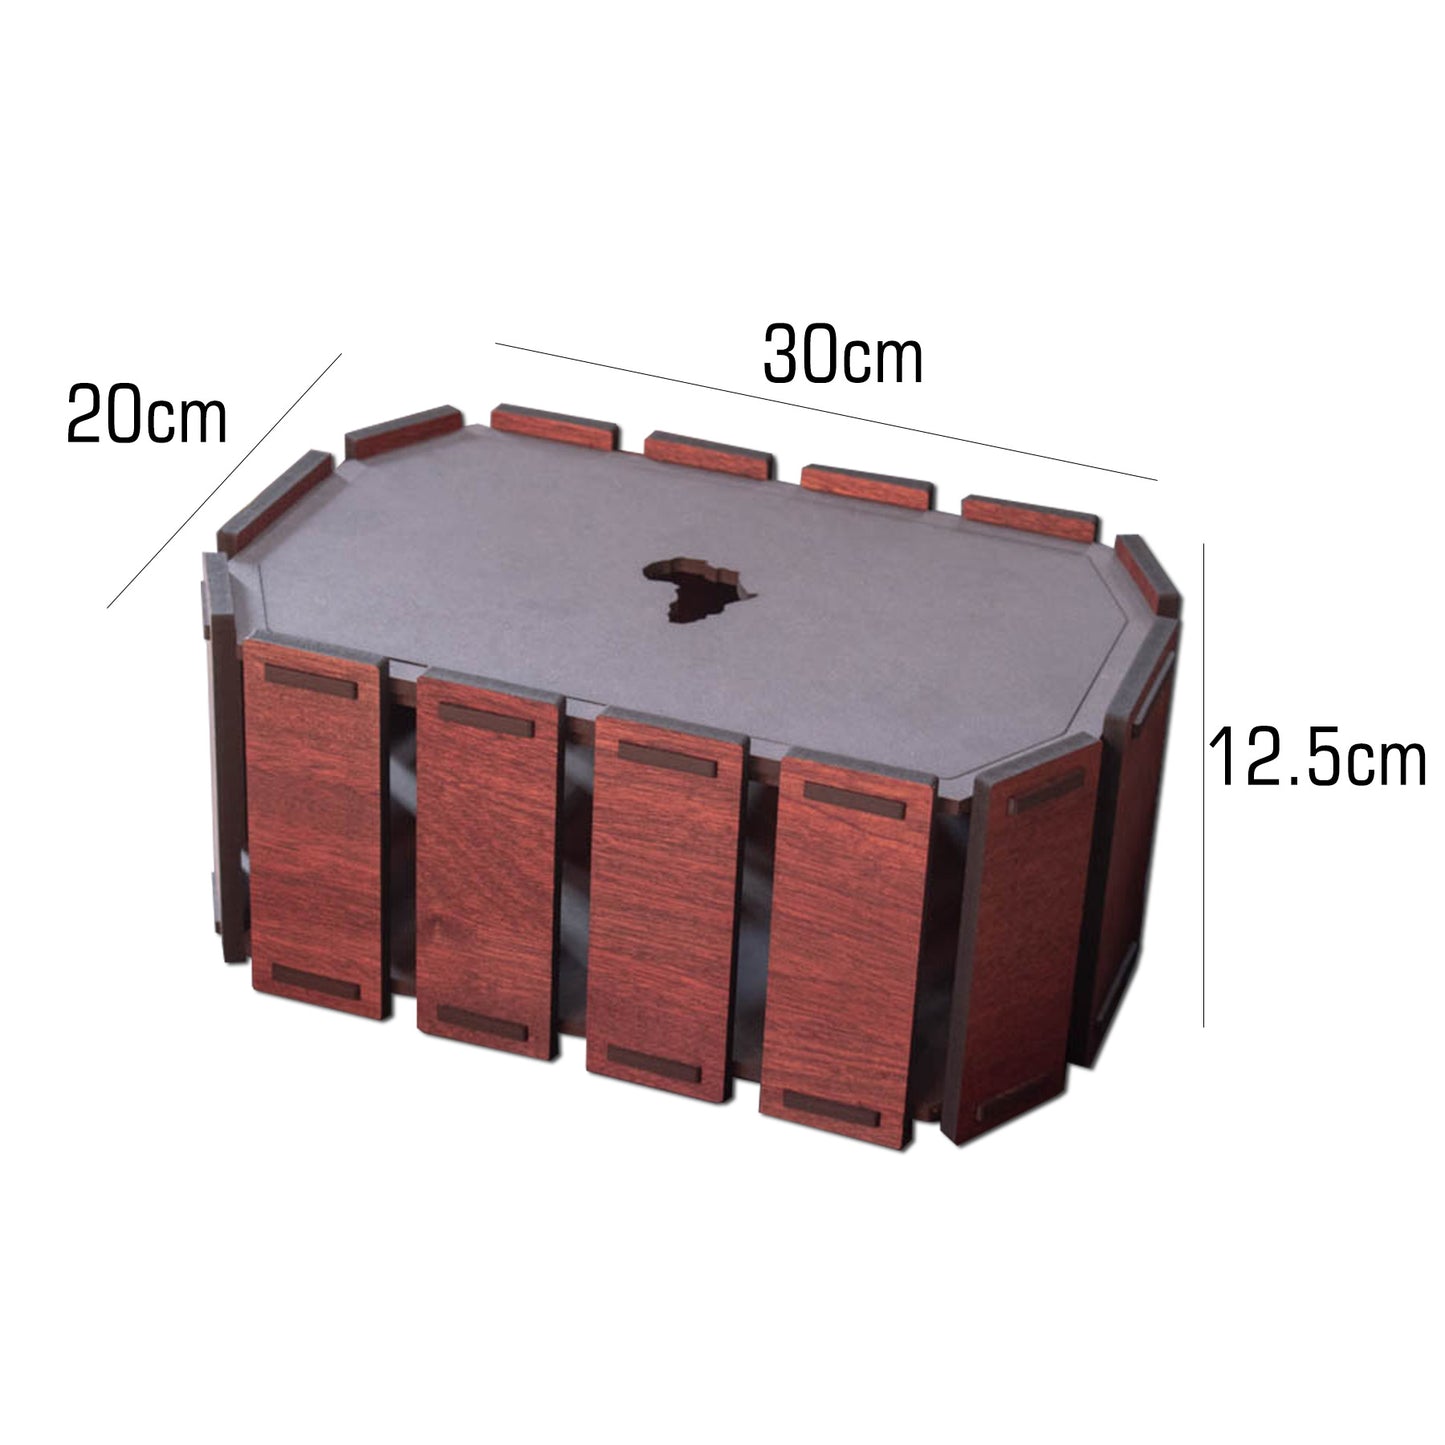 Slatted Wood Storage Boxes (Set of 3)